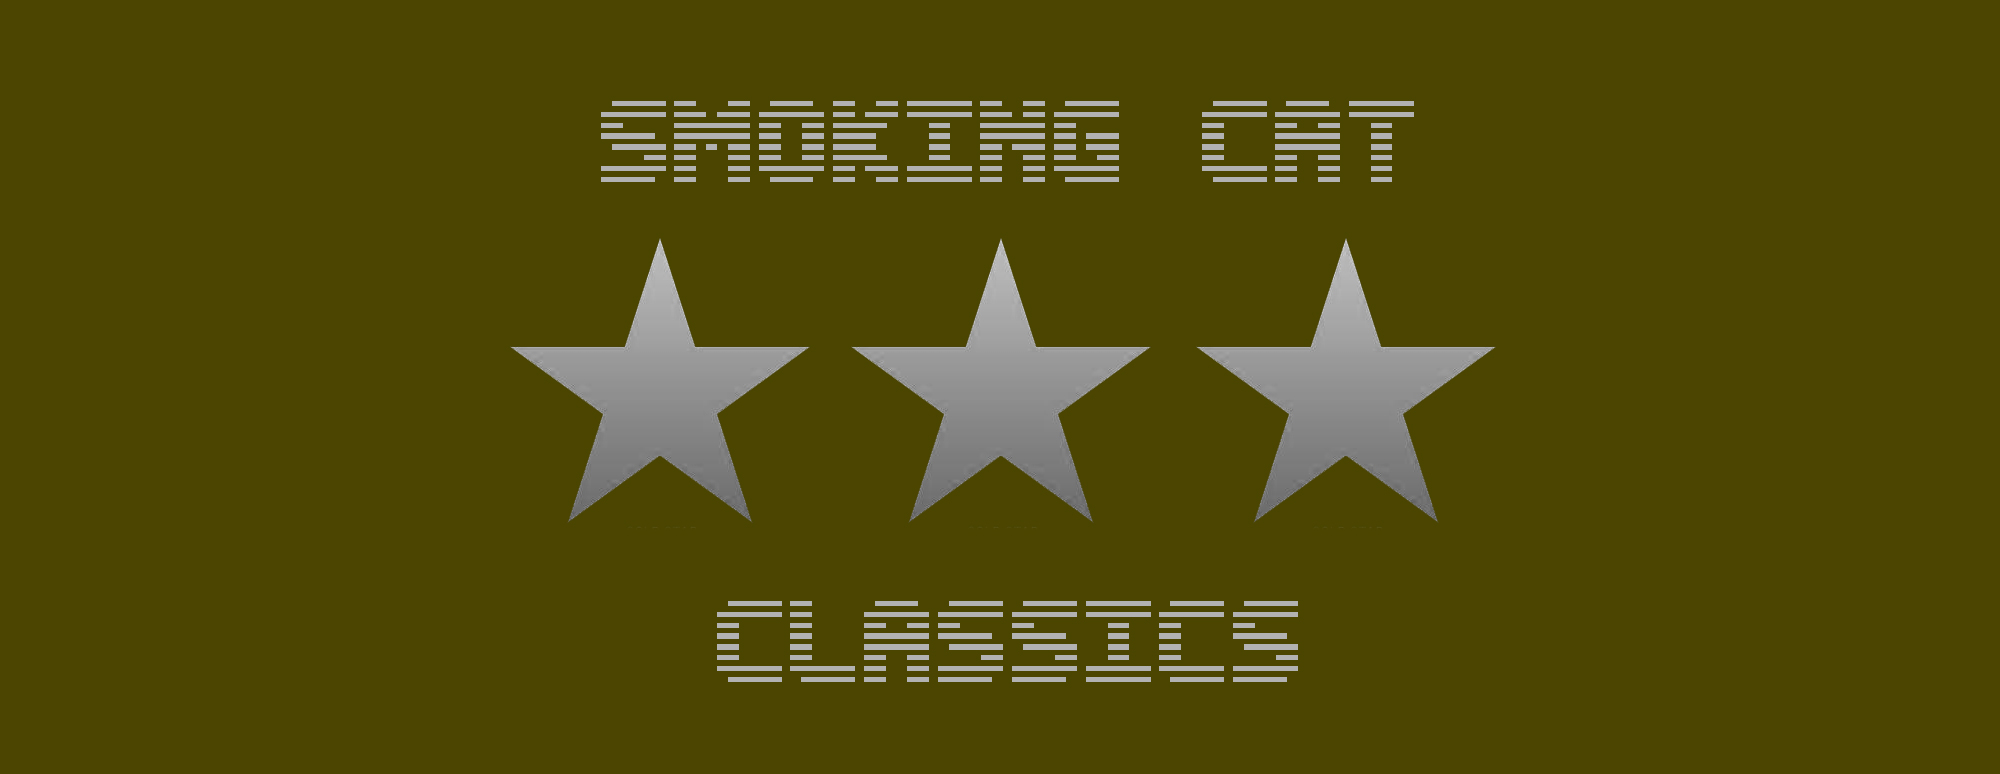 Smoking Cat Classics - 3 rounds card game